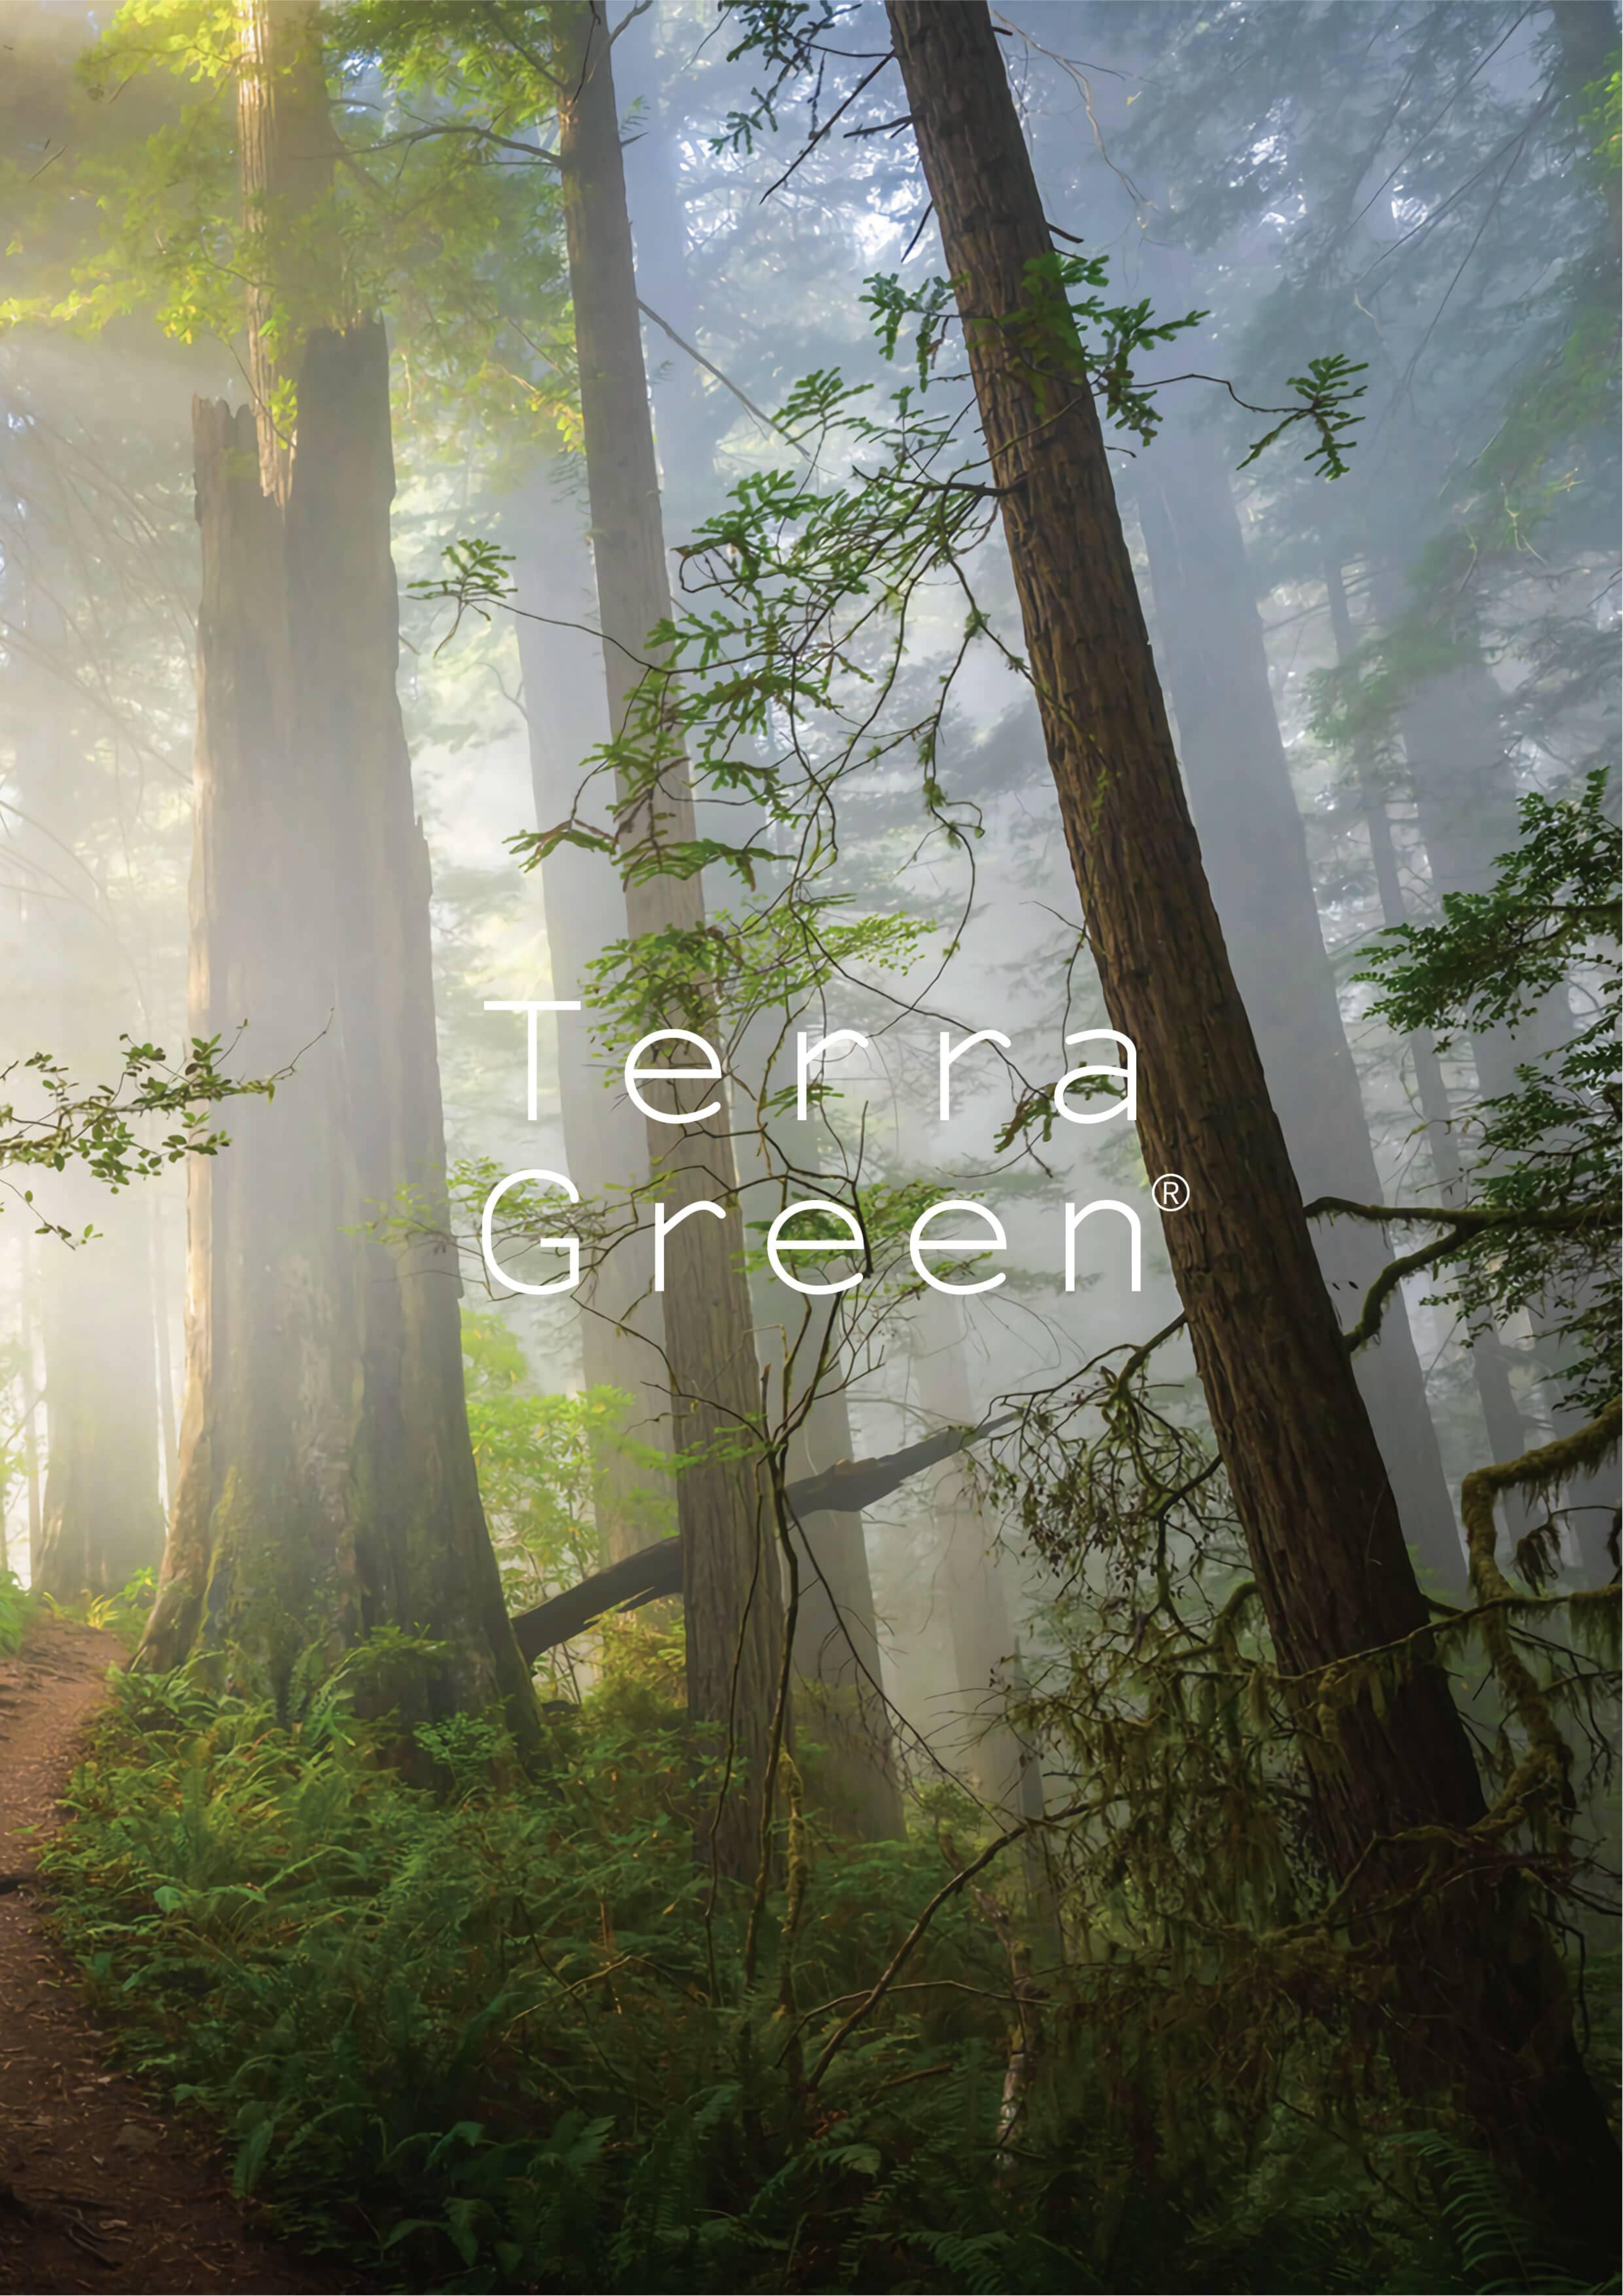 新版品牌图册 - Terra Green (特拉·格林)_00.jpg